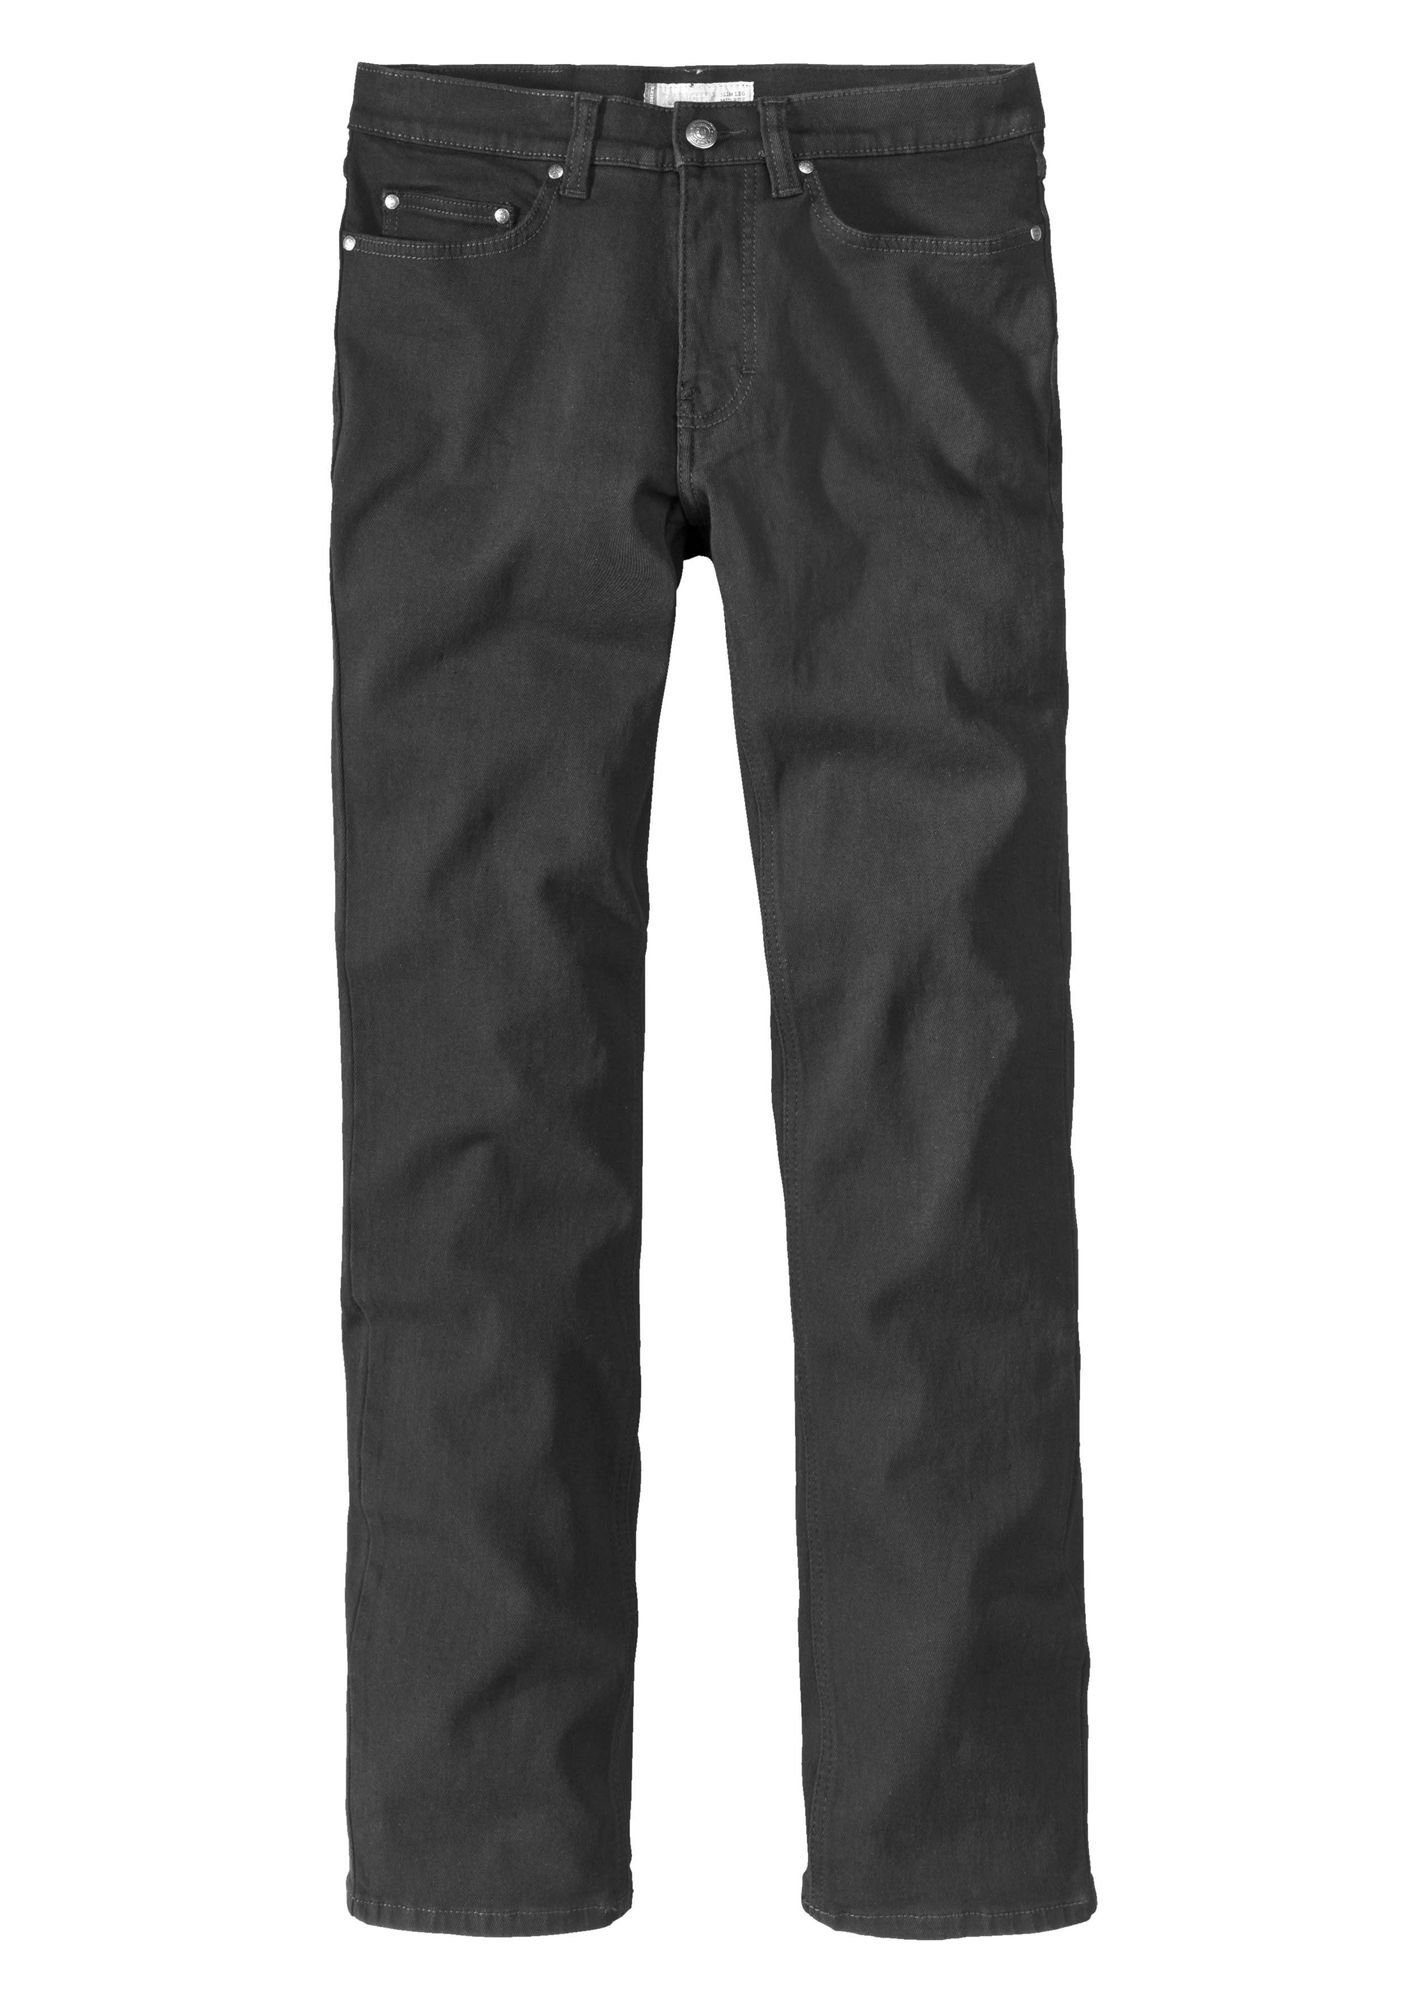 Paddock's 5-Pocket-Jeans Ranger Slim-Fit black/ black(6001)